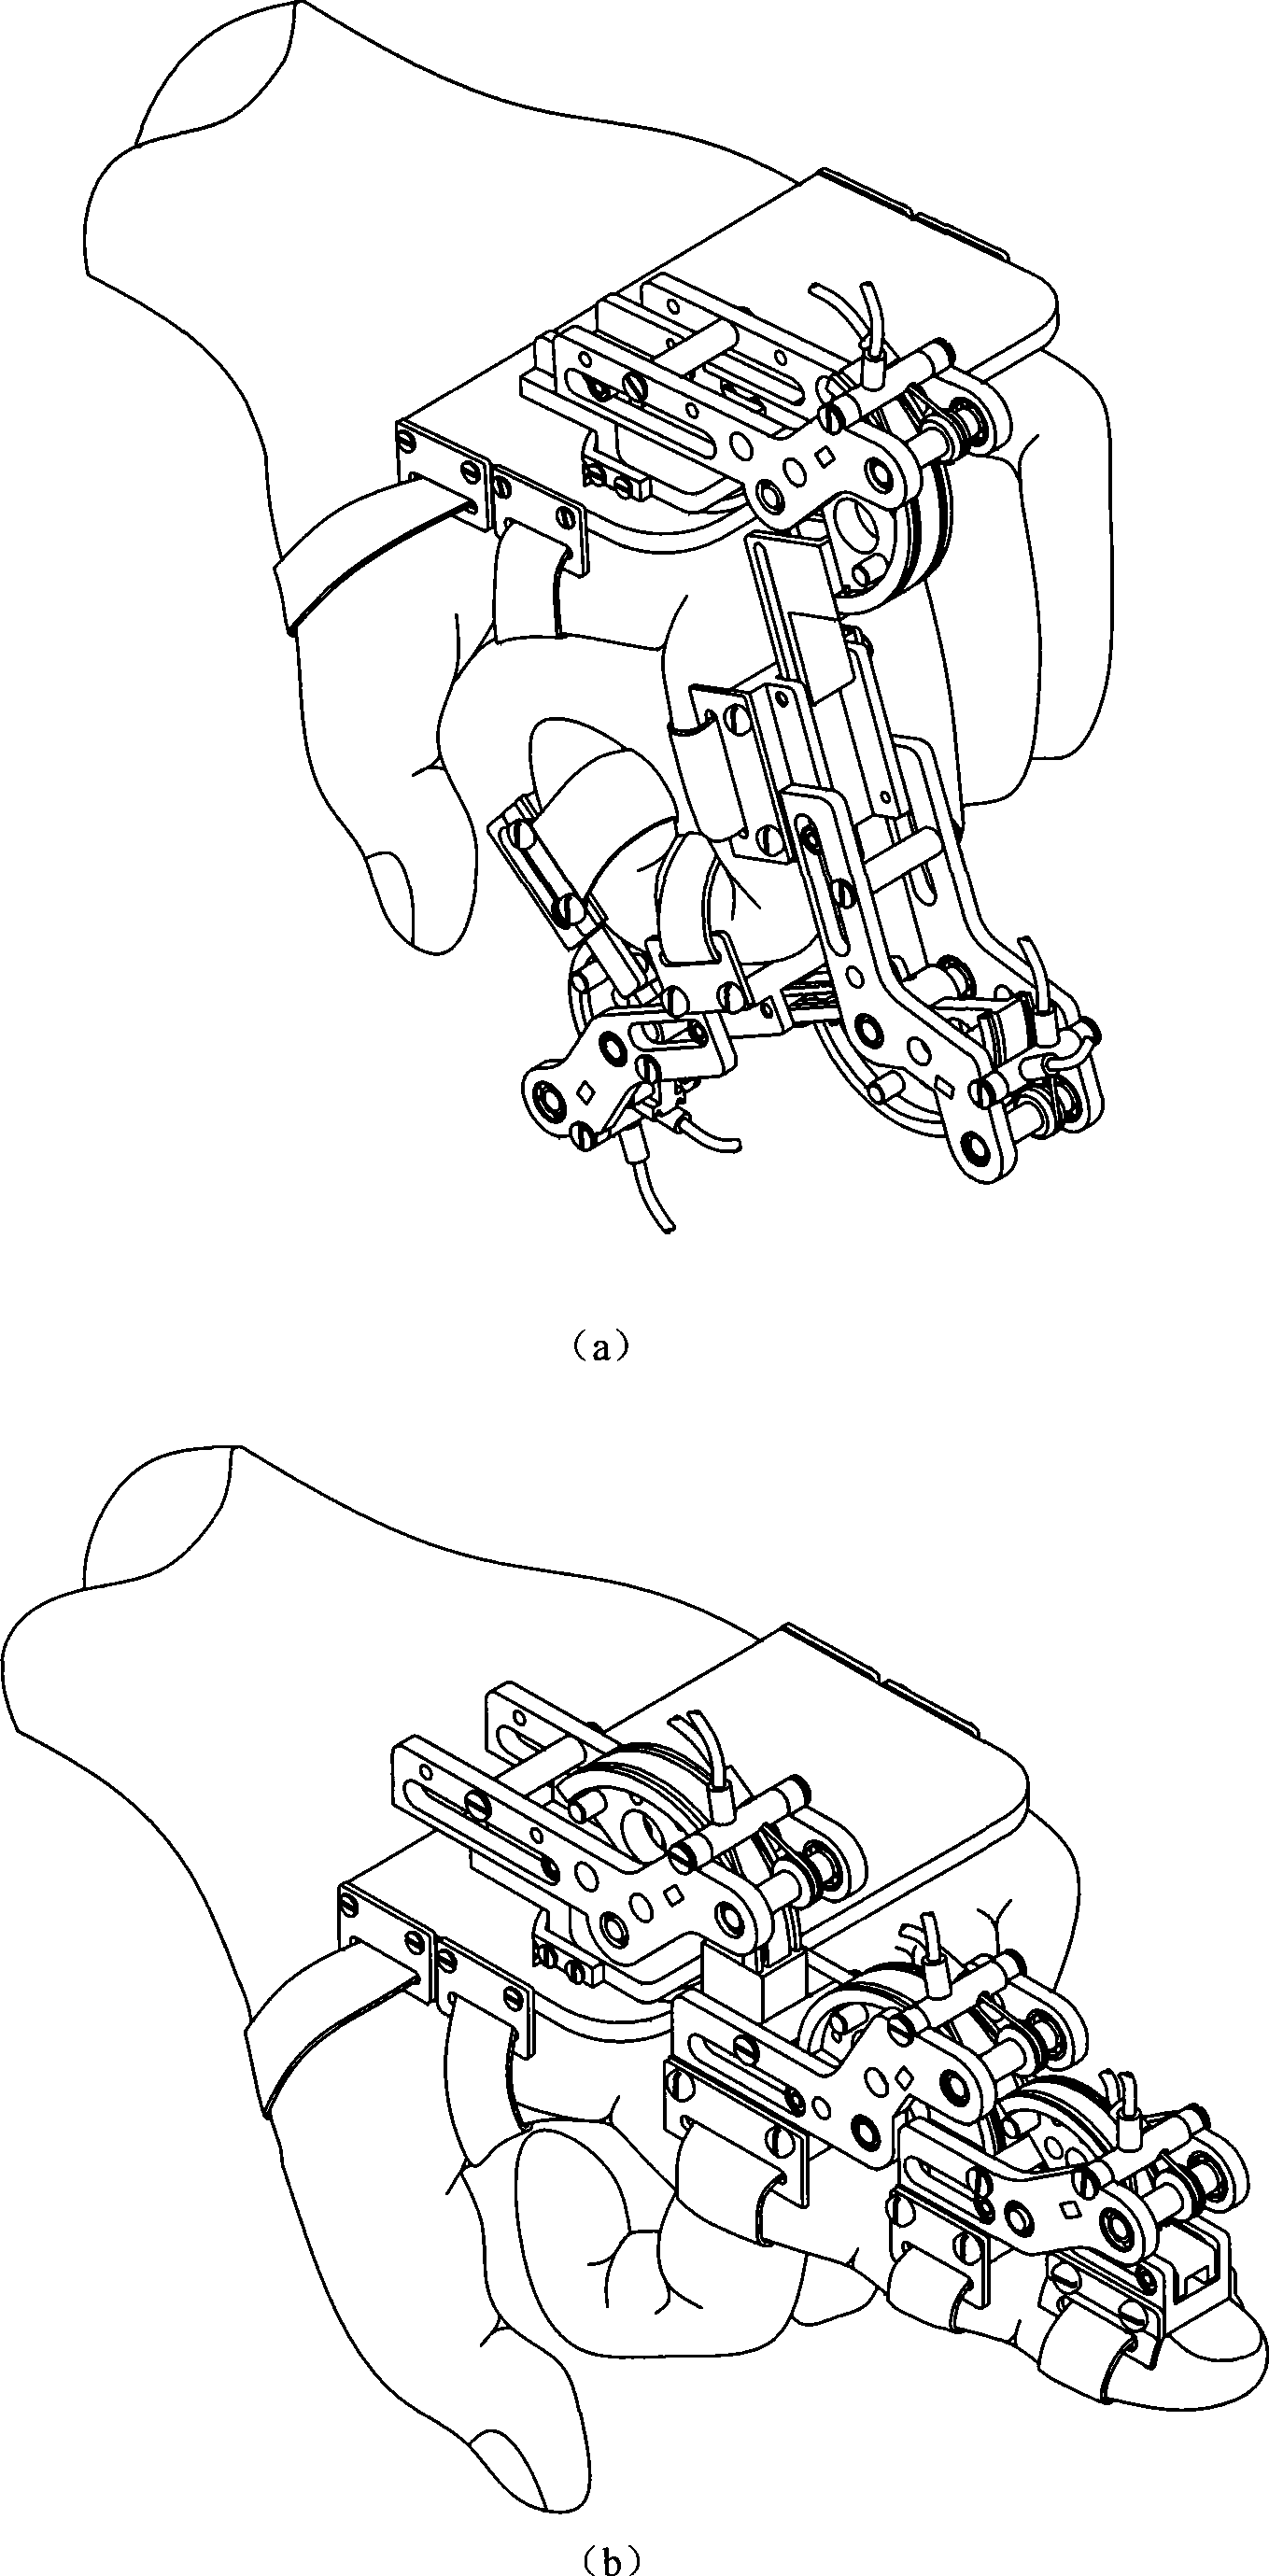 Finger motor function rehabilitation robot